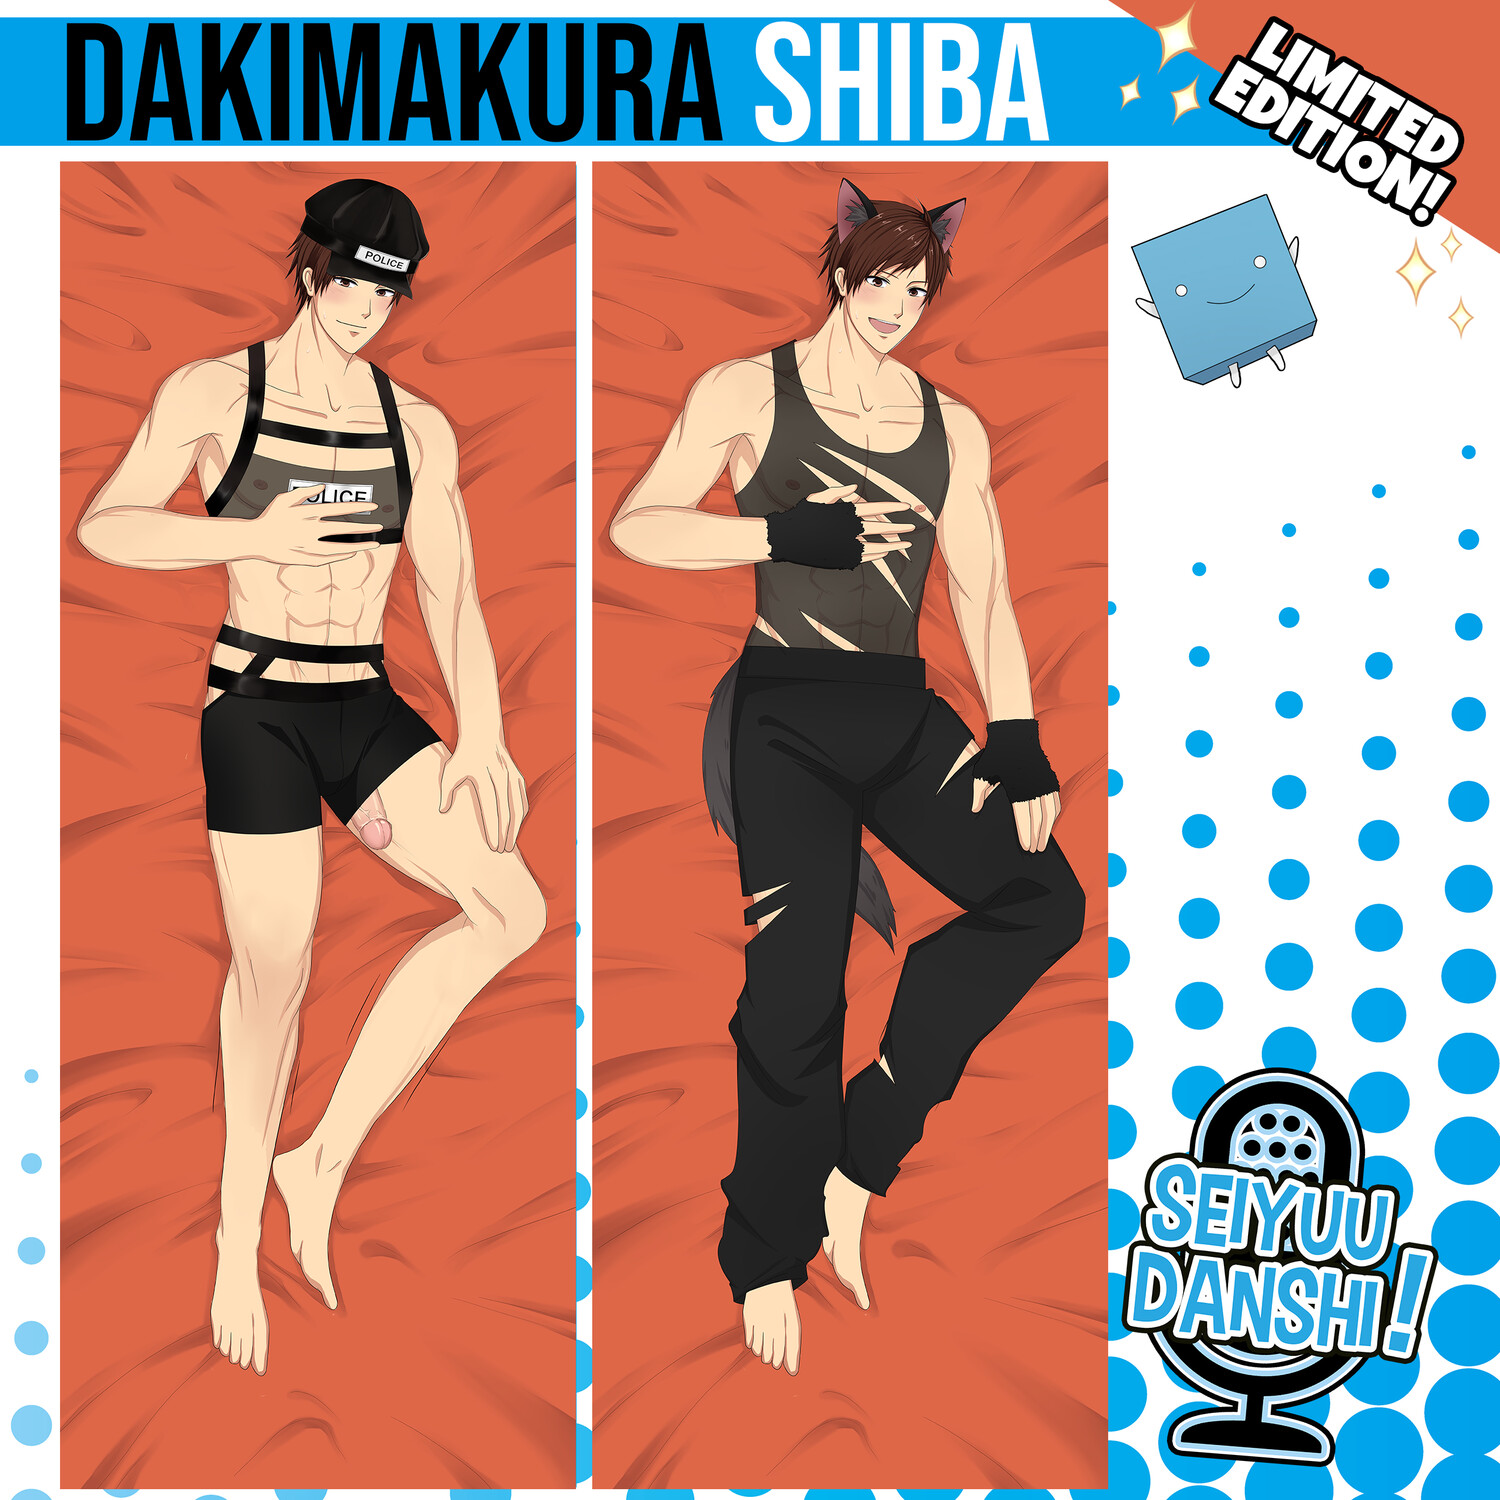 Dakimakura Shiba - Special